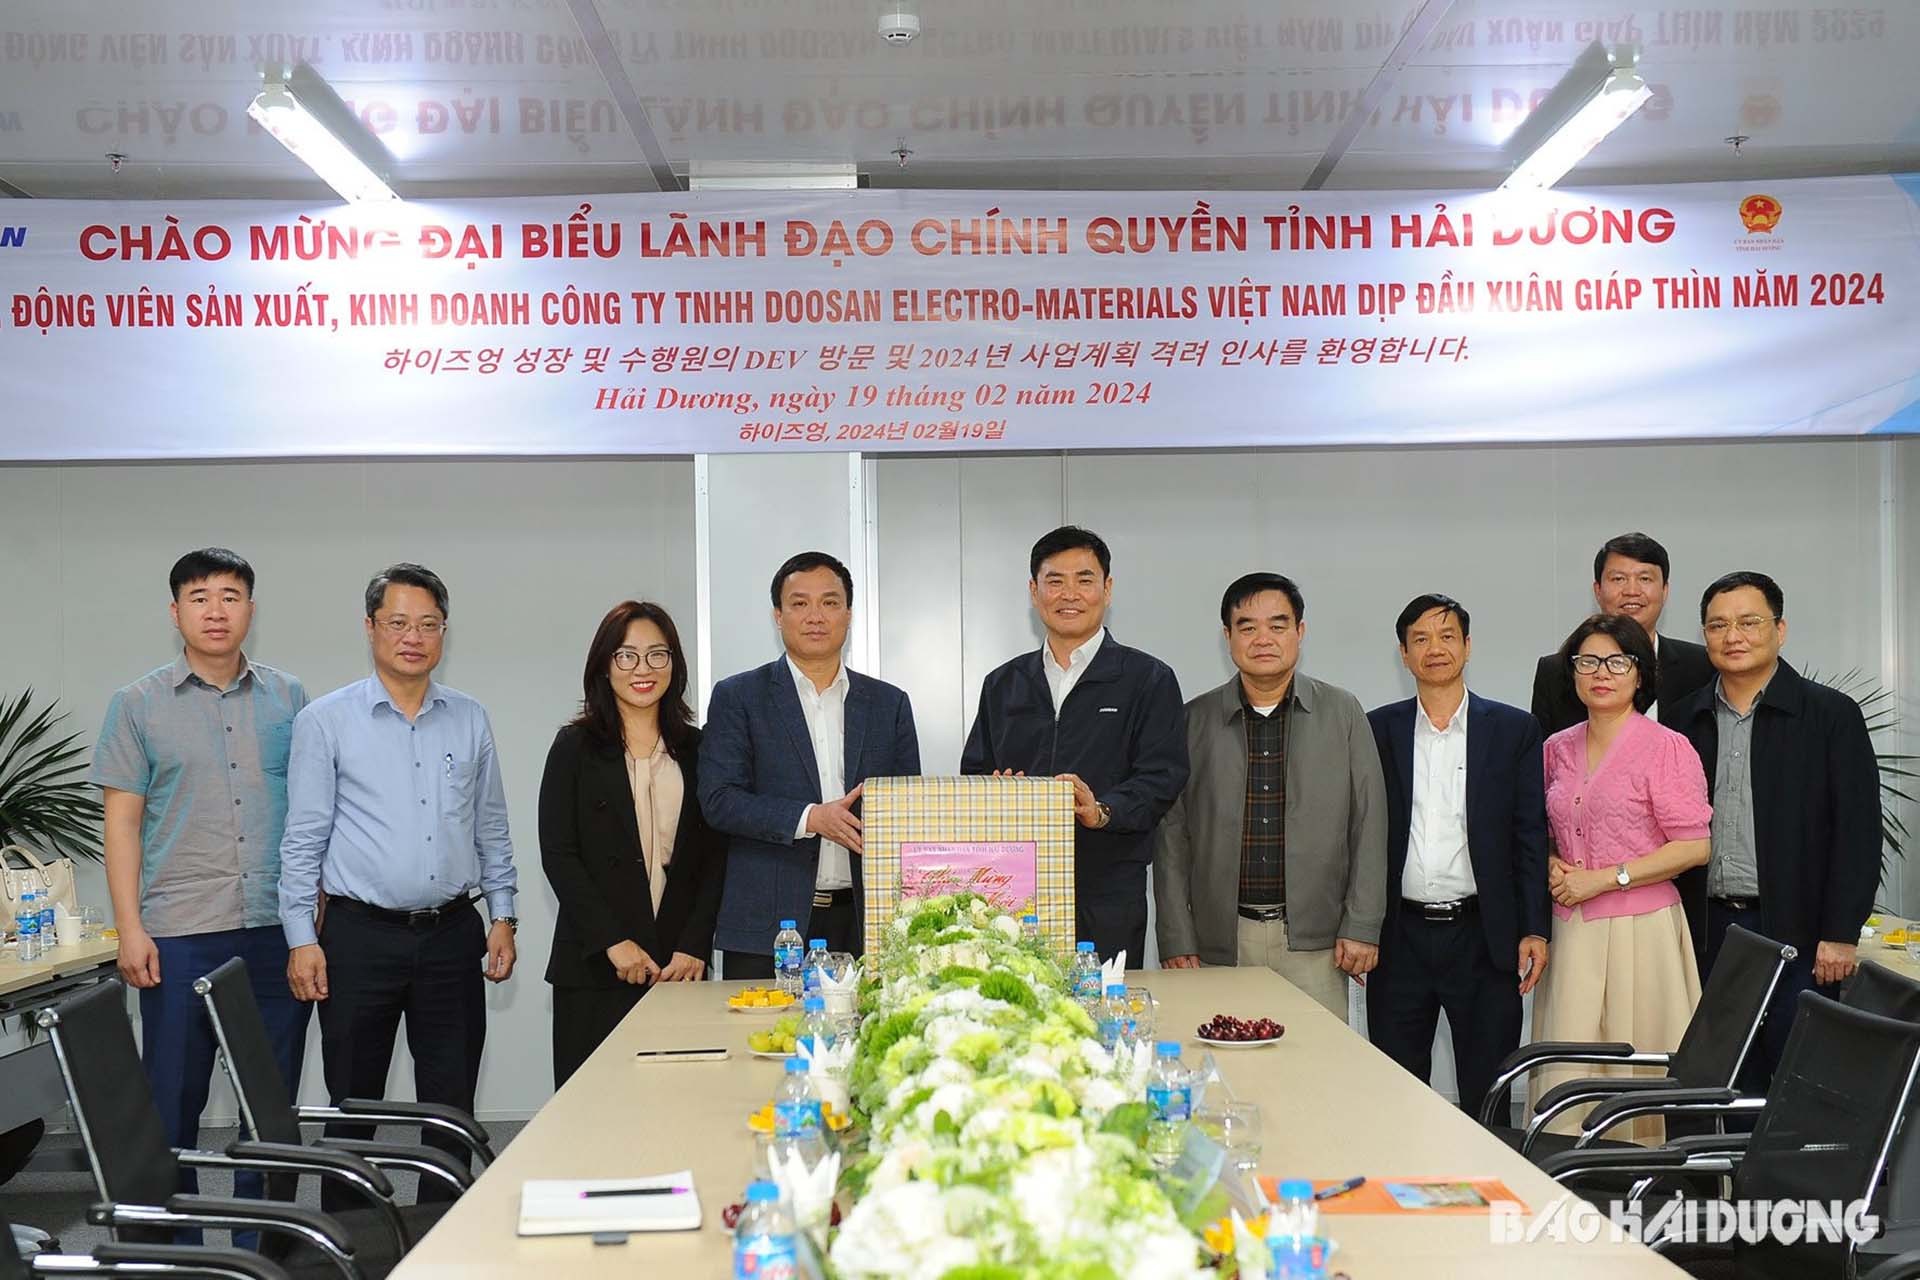 Chủ tịch UBND tỉnh Triệu Thế Hùng tặng quà động viên Công ty TNHH Doosan Electro-Materials Việt Nam đầu xuân Giáp Thìn